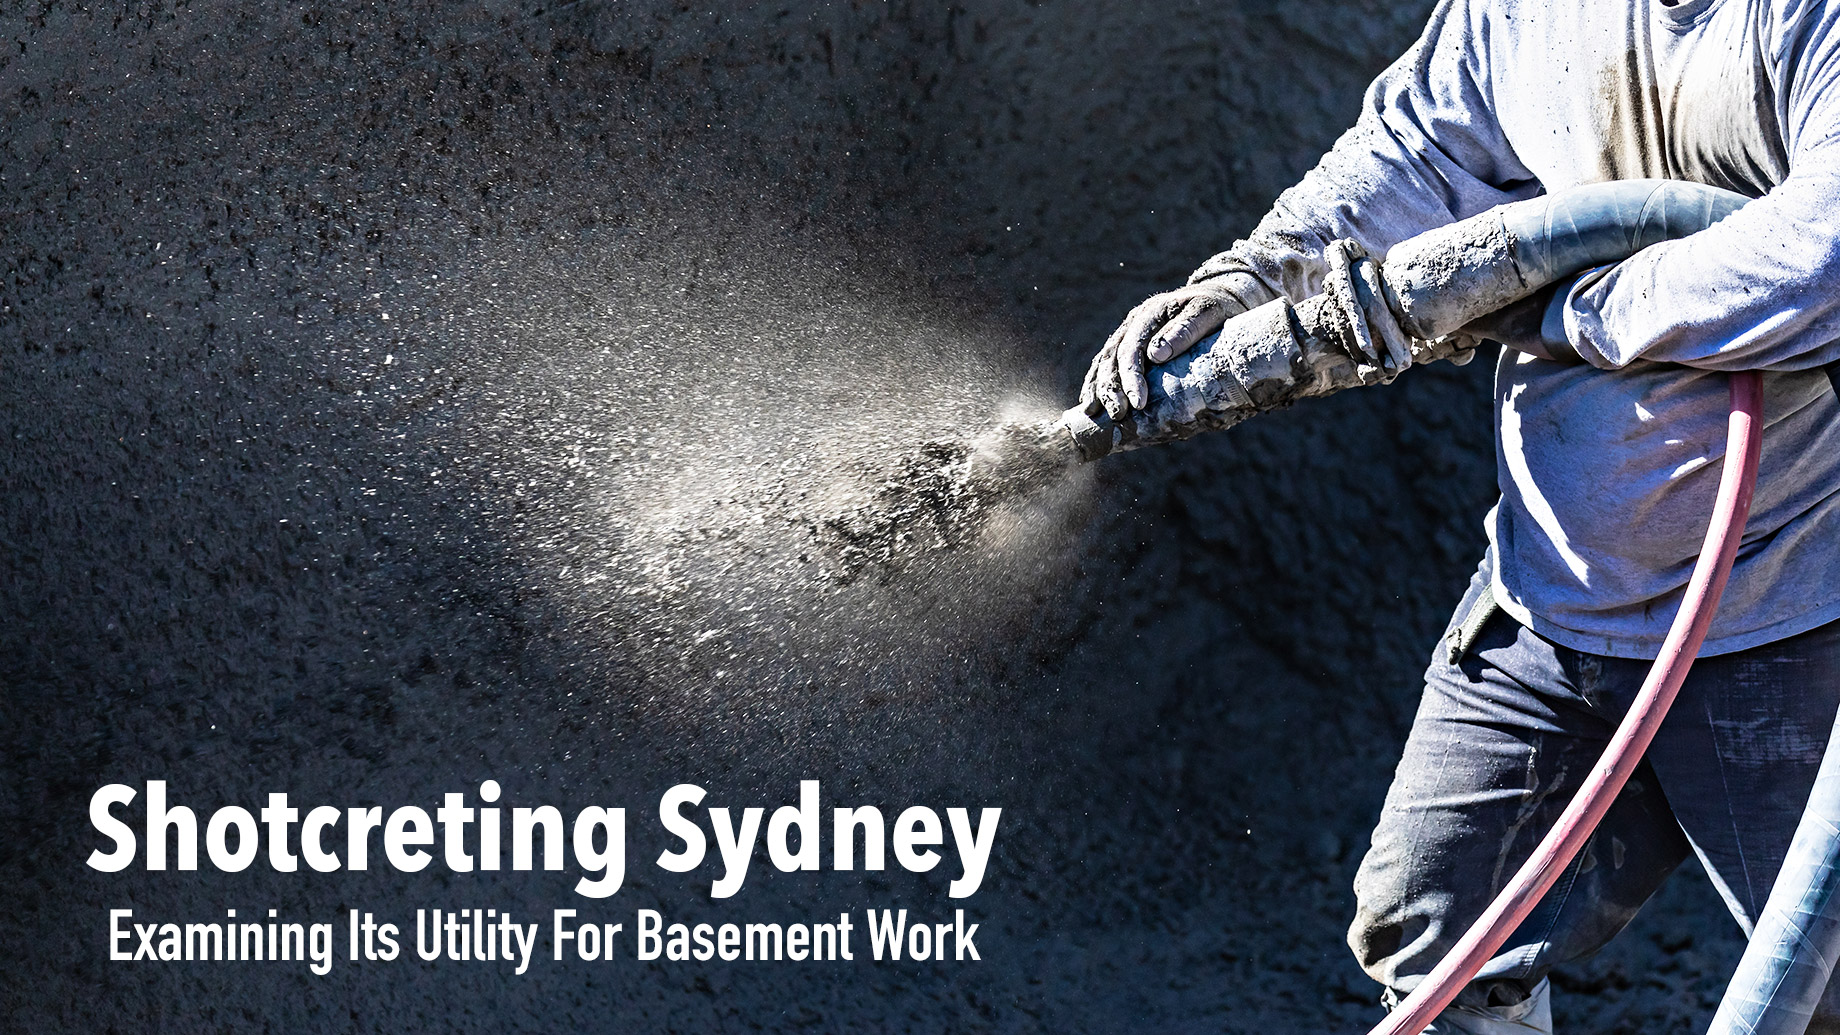 Shotcreting Sydney - Examining Its Utility For Basement Work